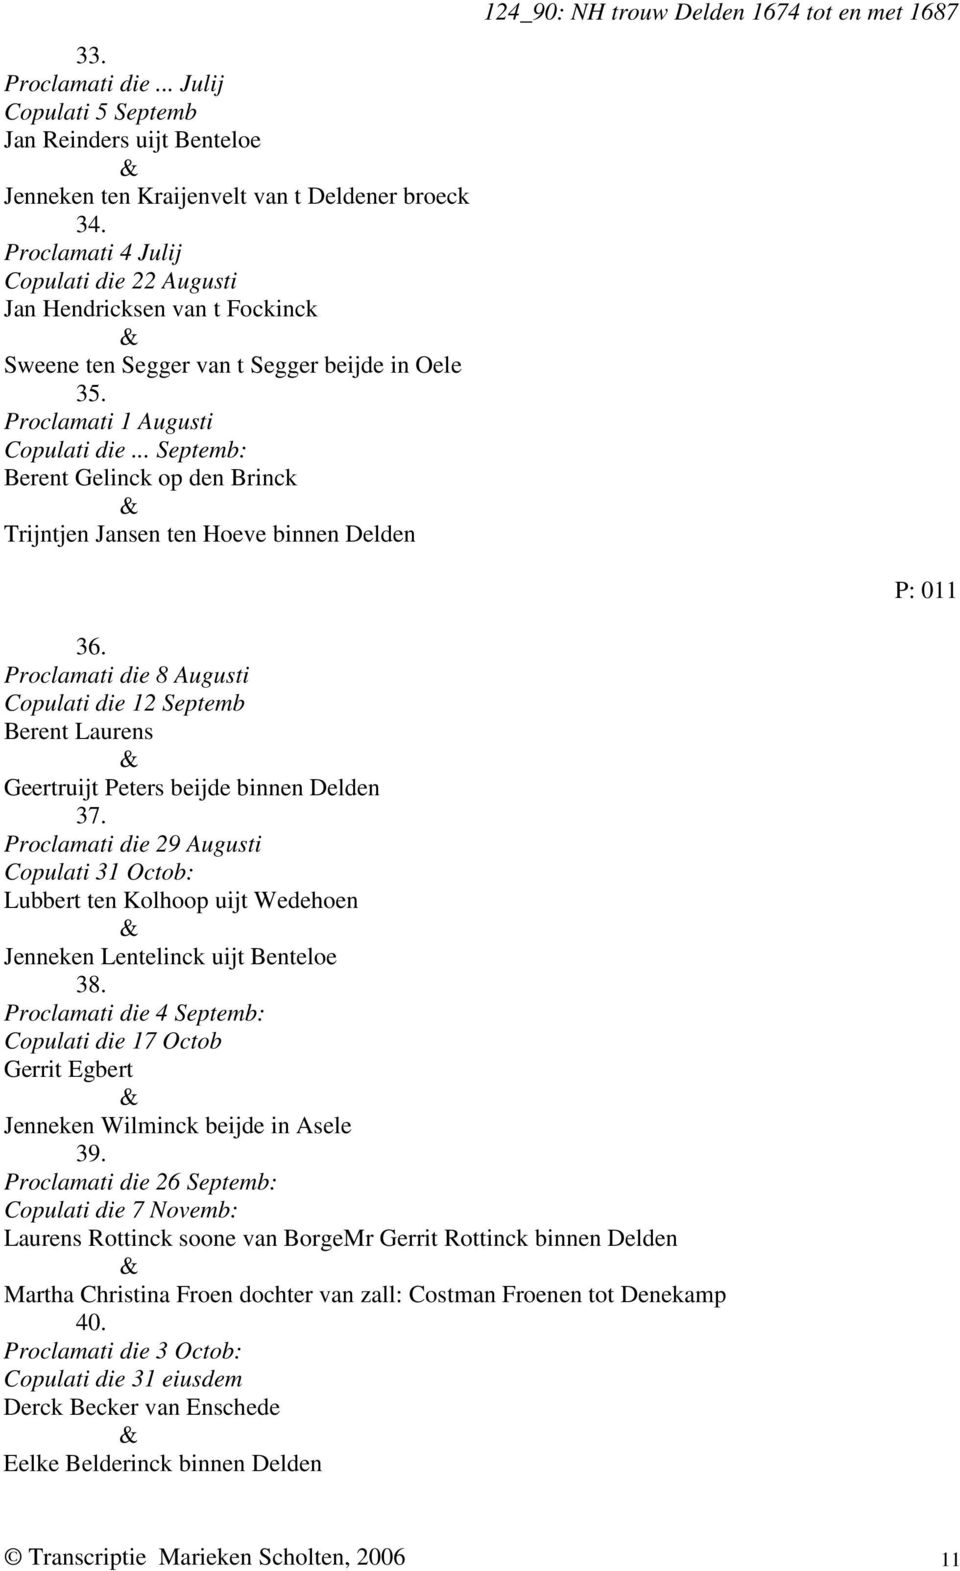 .. Septemb: Berent Gelinck op den Brinck Trijntjen Jansen ten Hoeve binnen Delden 124_90: NH trouw Delden 1674 tot en met 1687 36.